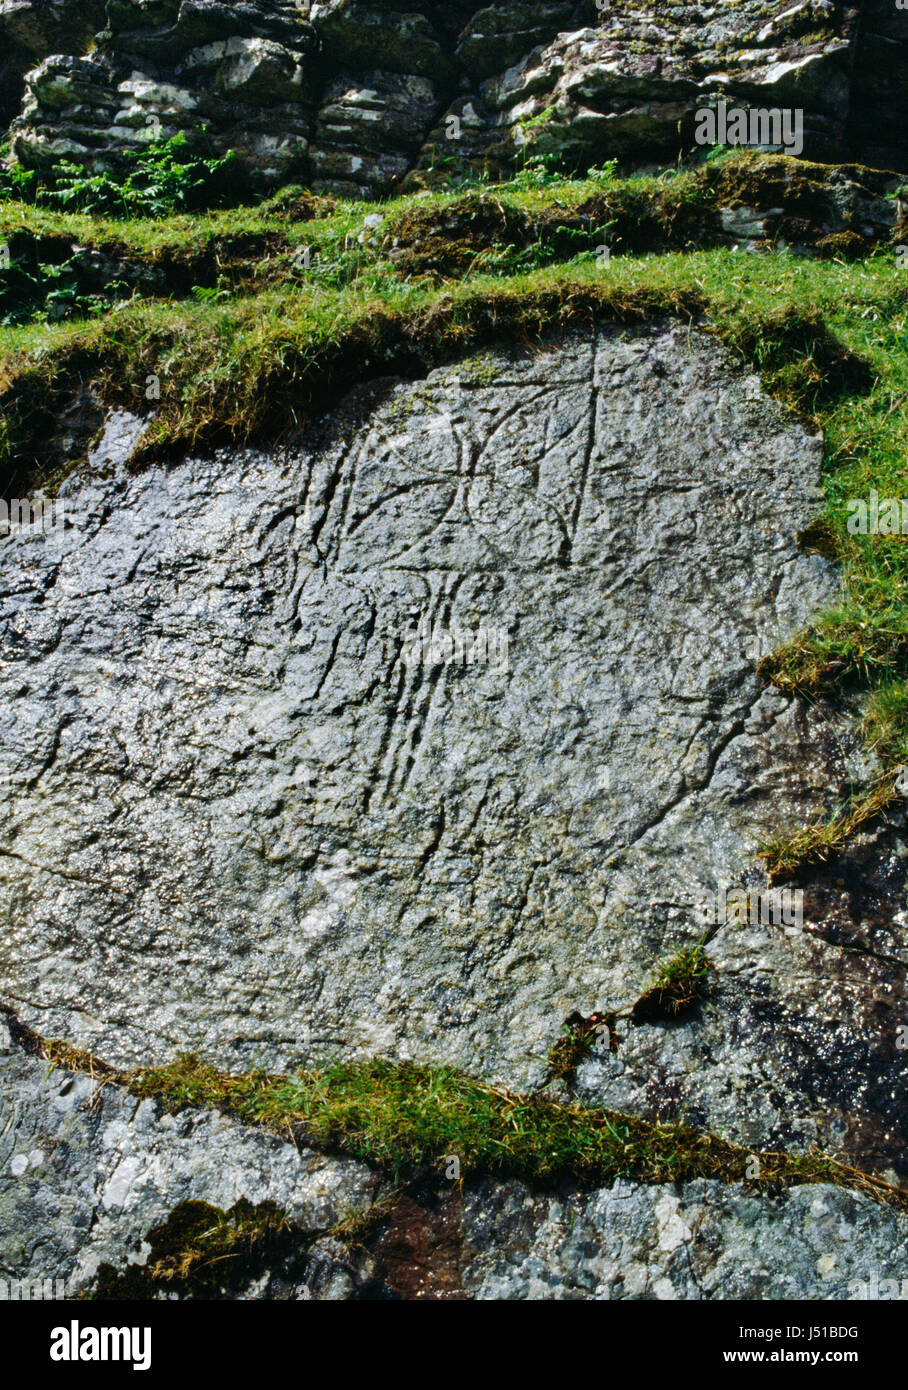 Symbole Chrétien picte sculptés sur paroi rocheuse surplombant la baie de Churchton, Crianlarich, au large de Skye, en Ecosse. Flabellum rituel (ventilateur) à bras égaux et croix. Banque D'Images